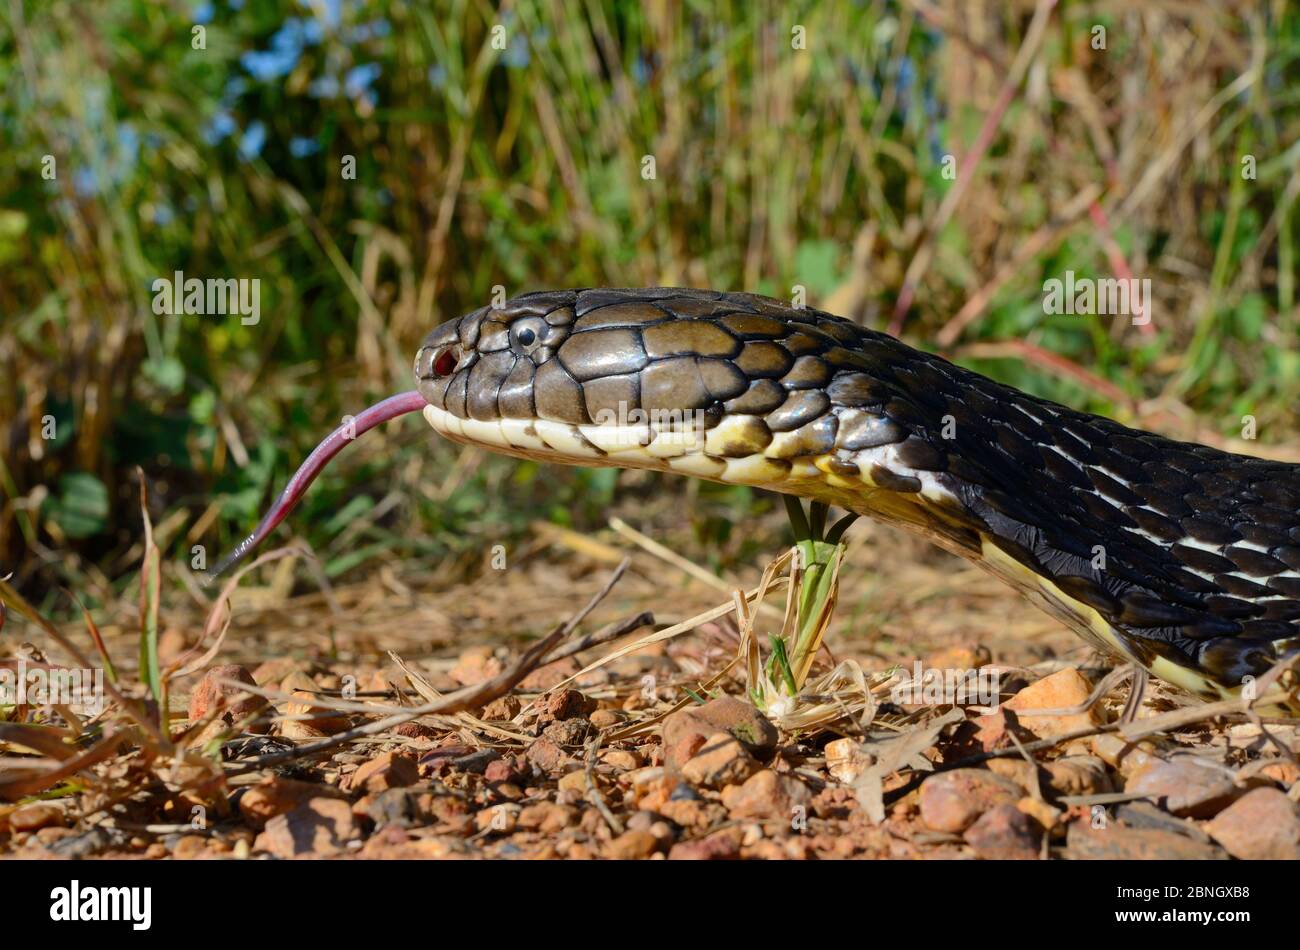 King cobra (Ophiophagus hannah) Thailand Stock Photo